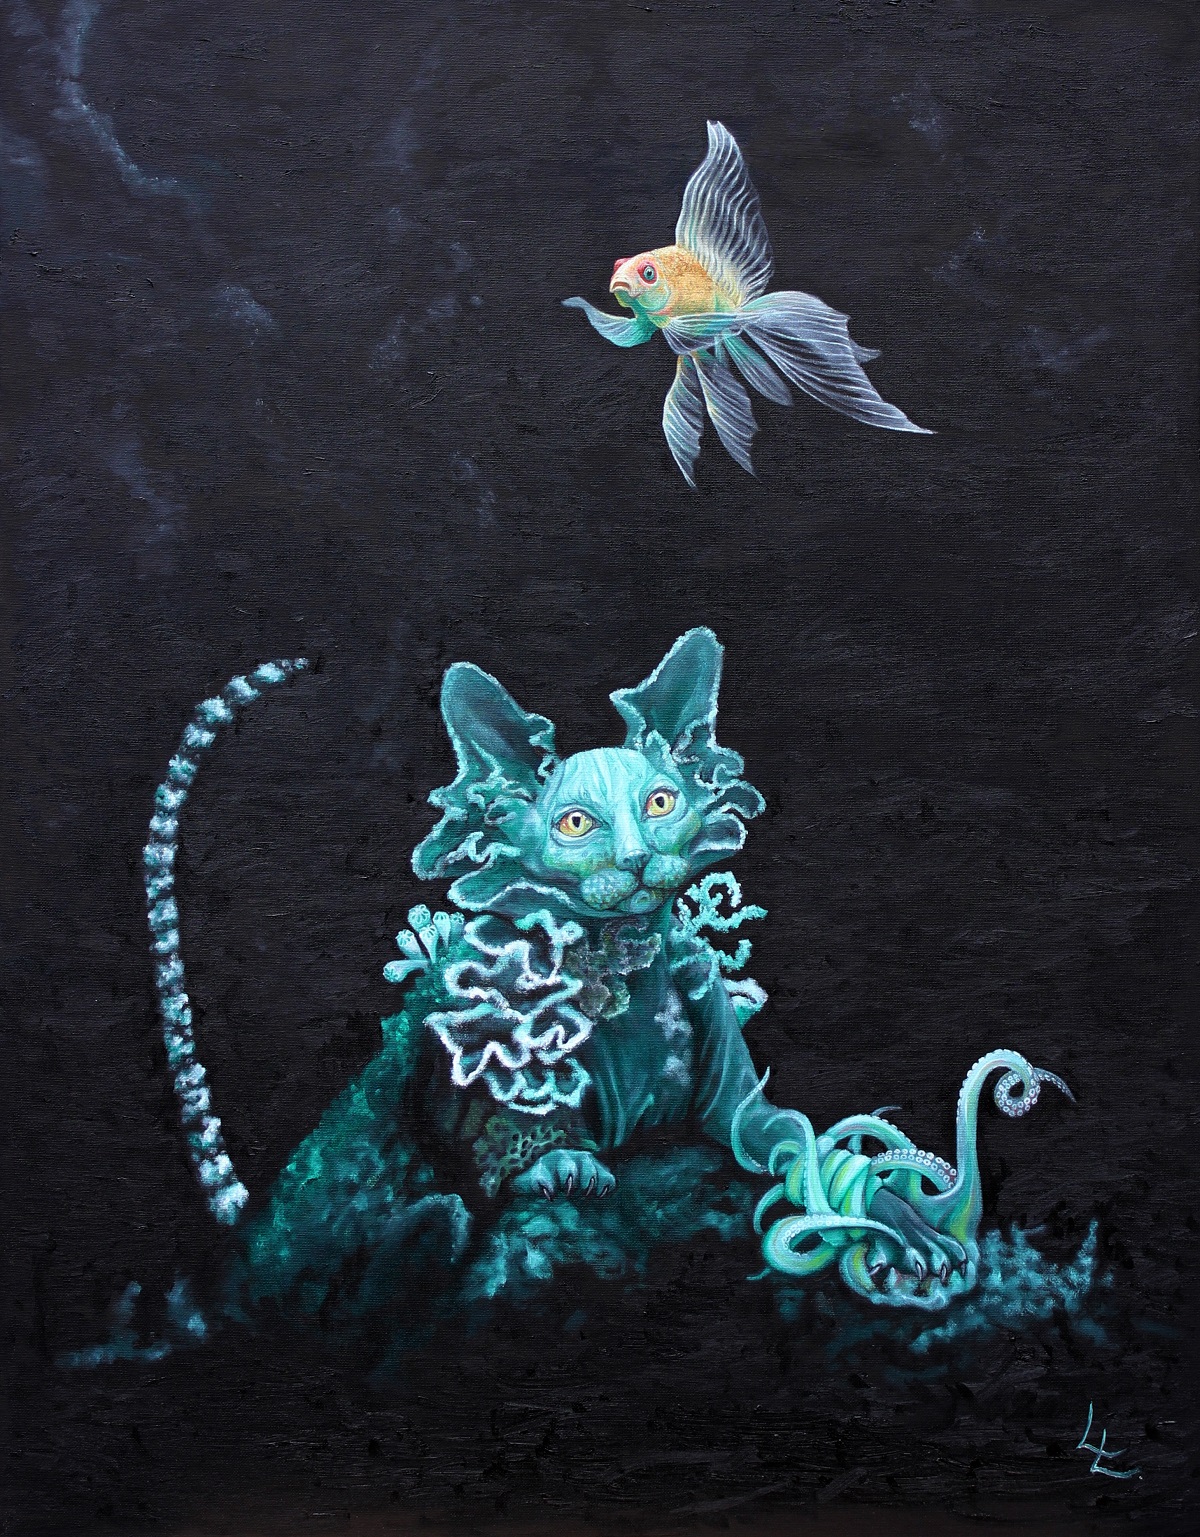 Målning av fisk och katt som vuxit samman med objekt från havet så som korall och bläckfisk. Turkos, svart och gult.